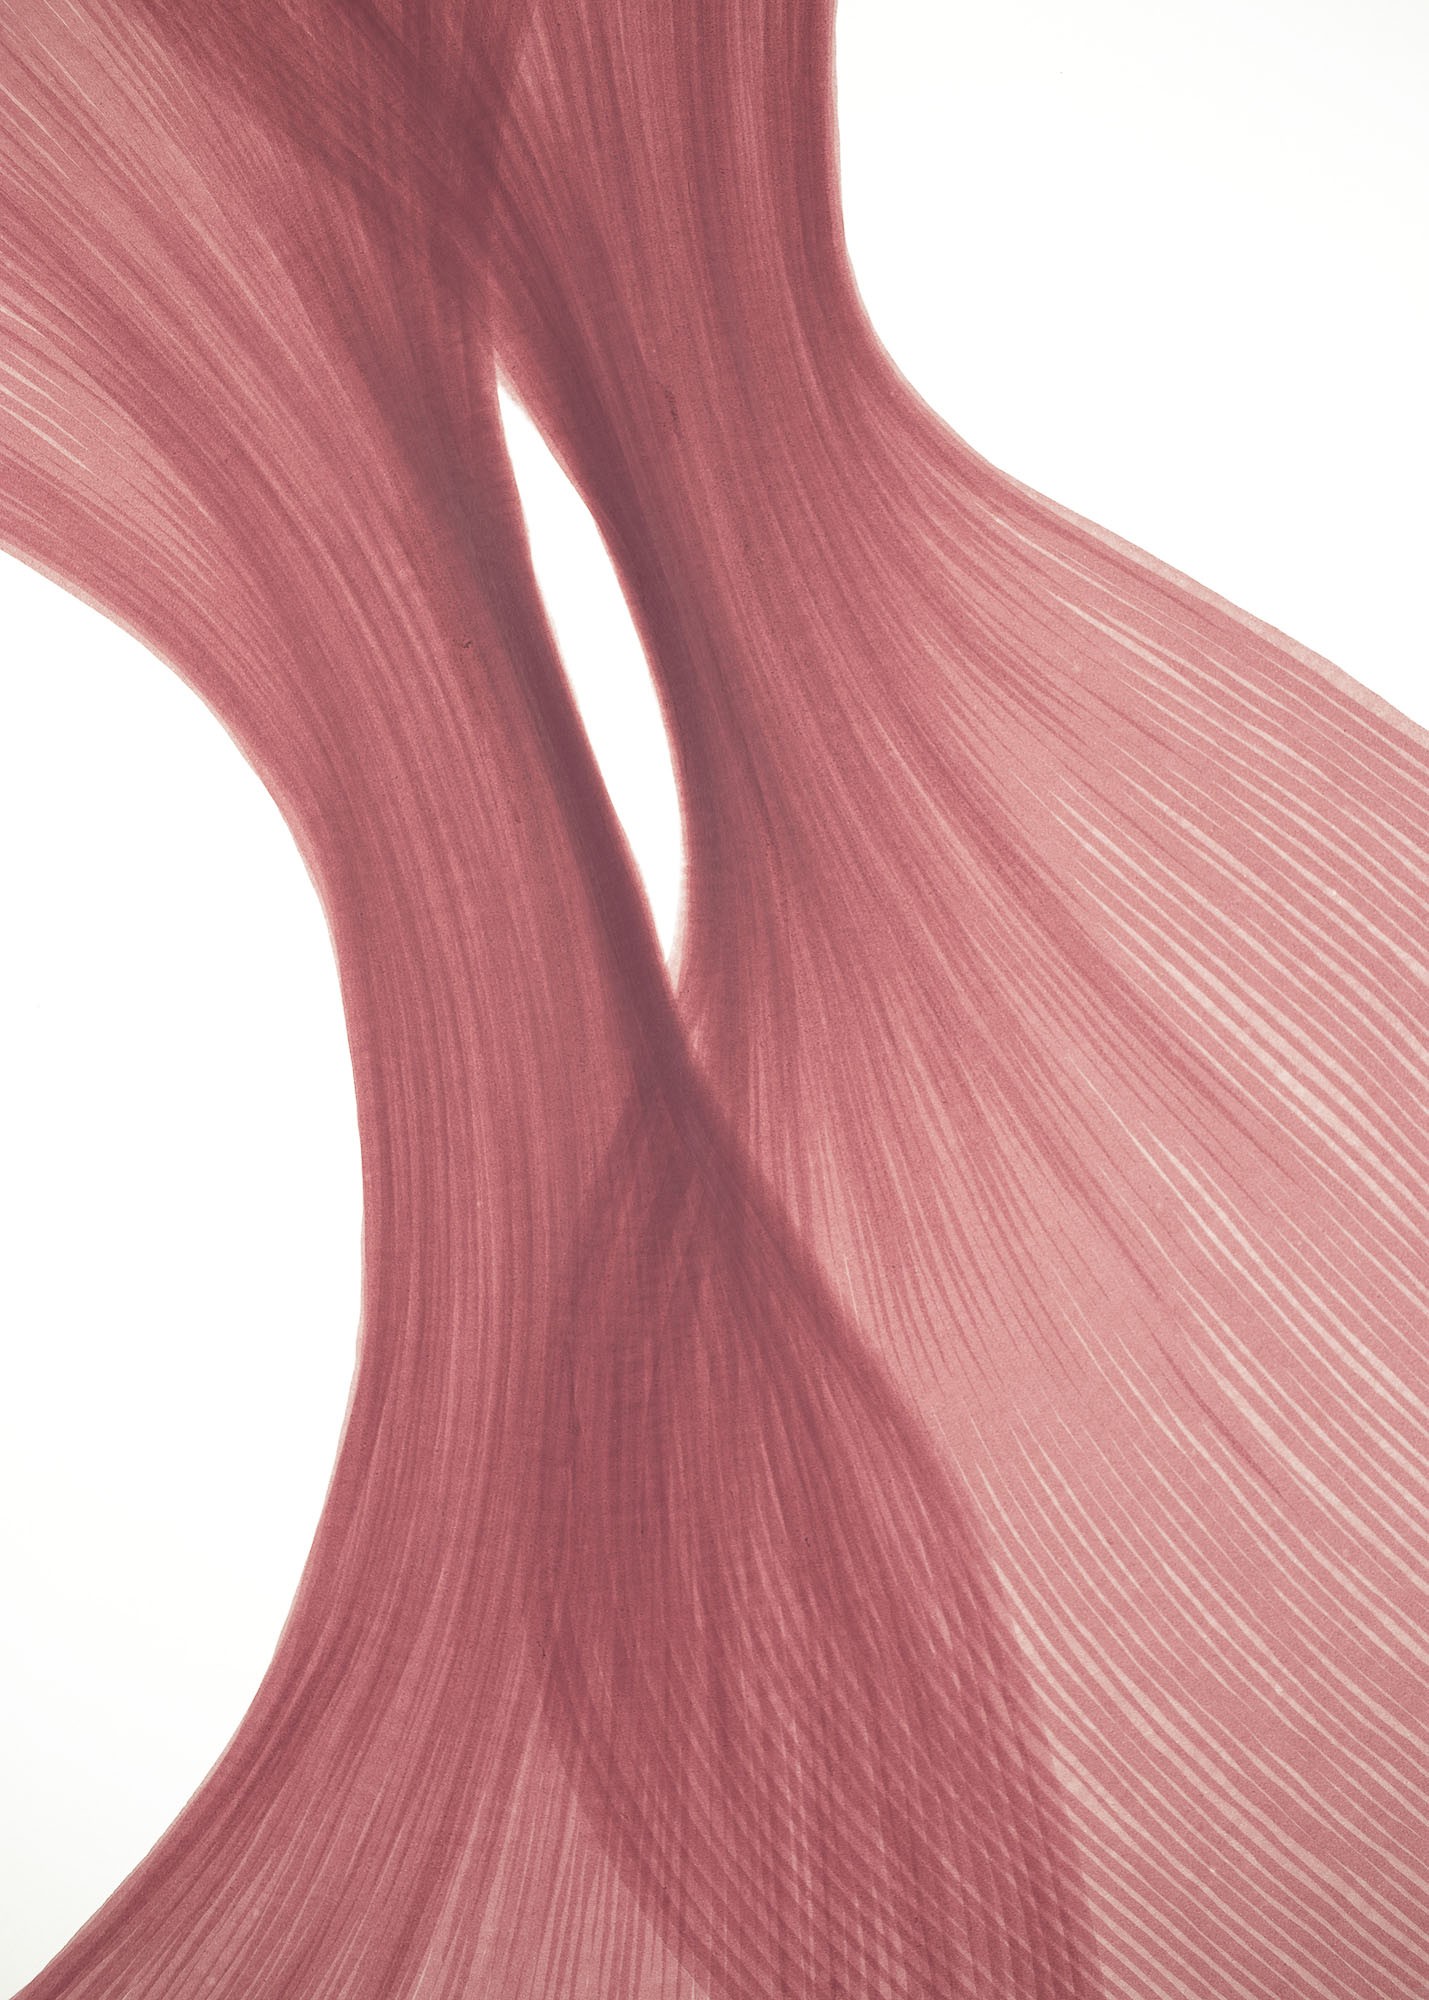 Raspberry Cream Sheer Folds | Lali Torma | Zeichnung | Kalligraphietusche auf Papier - 1